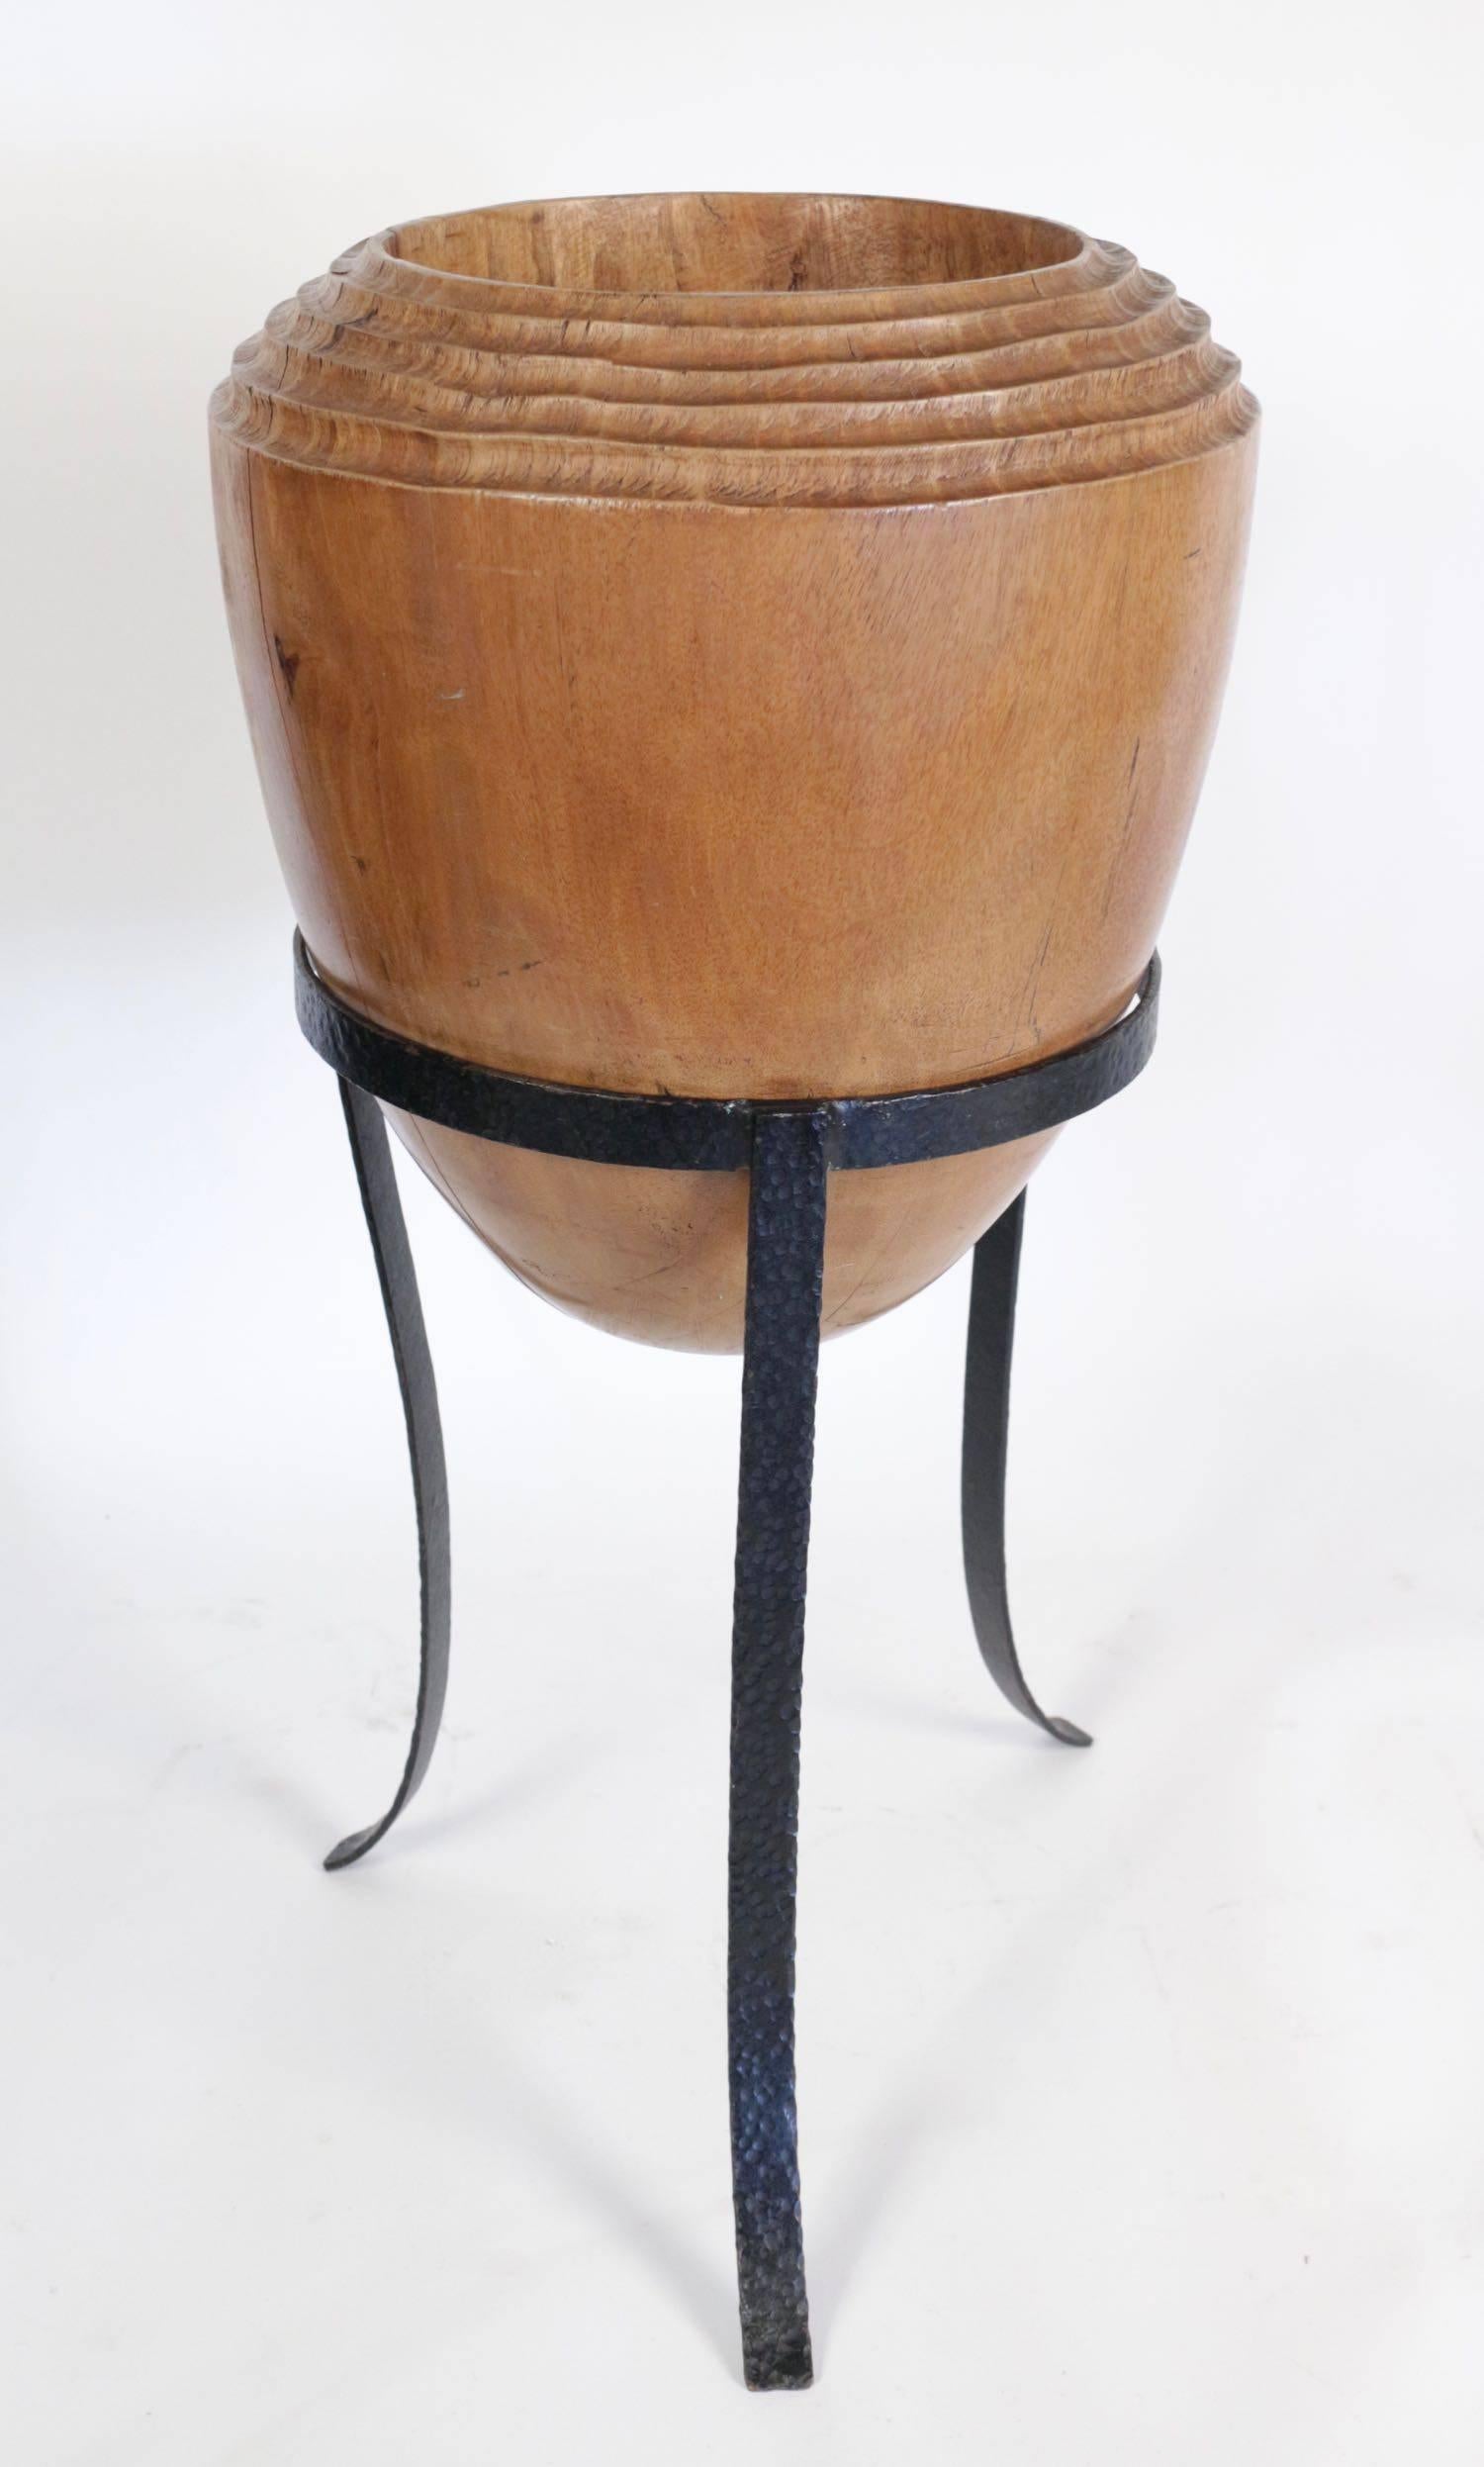 Grand pot décoratif Modern-Decor en bois massif en forme d'olive avec base en métal. 
Mesures : 72 cm de haut x 35 cm de large.
 